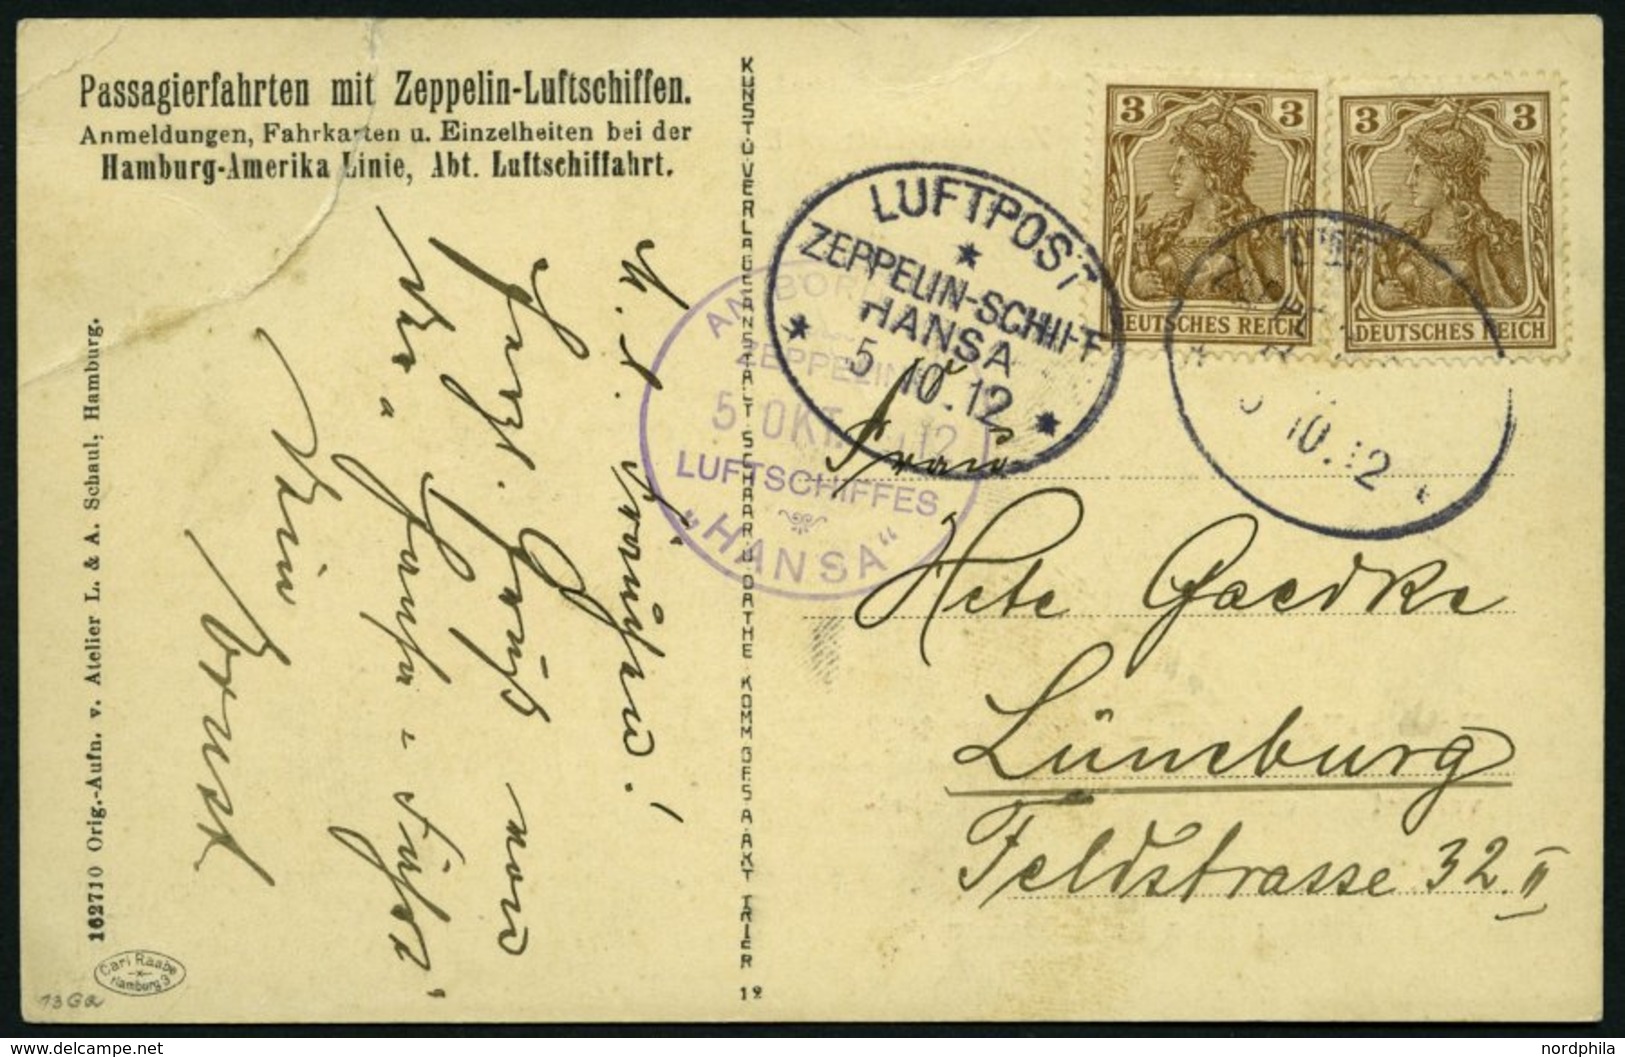 ZEPPELINPOST 6Ia BRIEF, 1912, Luftschiff Hansa, Fahrt Hamburg-Lüneburg-Hamburg Vom 5.10.1912, Mit Bord- Und Bordpoststem - Zeppelines